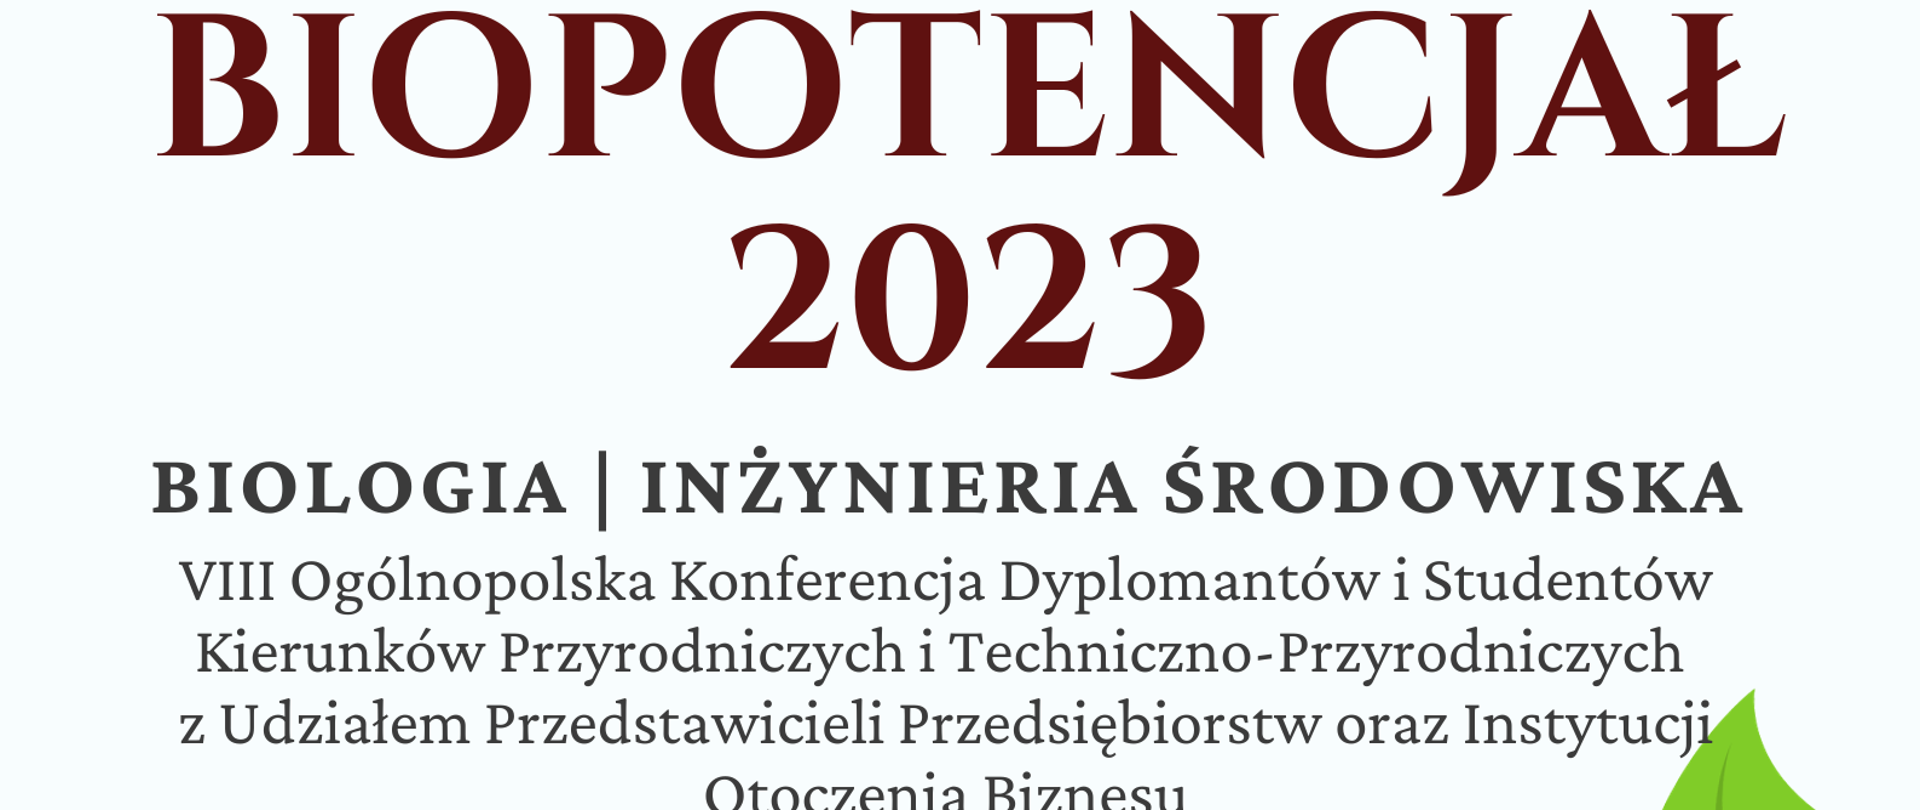 Plakat informacyjno promocyjny o Konferencji BIOPOTENCJAŁ 2023